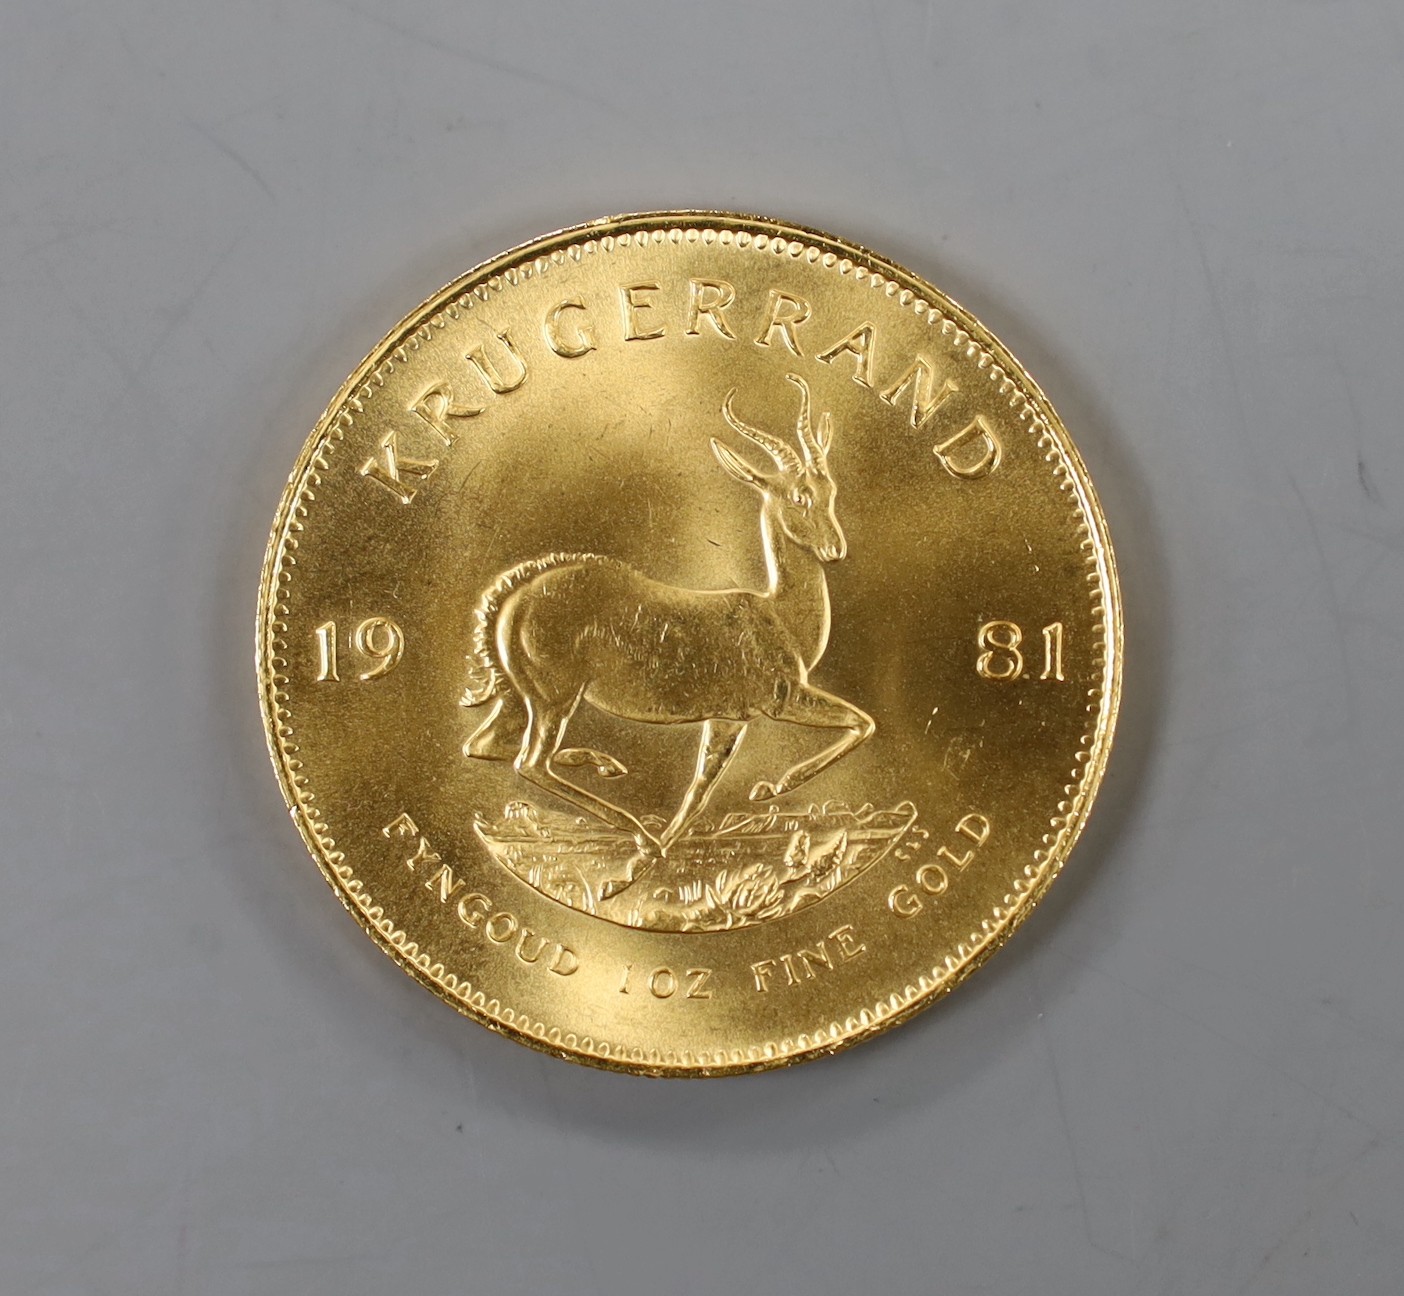 A 1981 gold krugerrand.